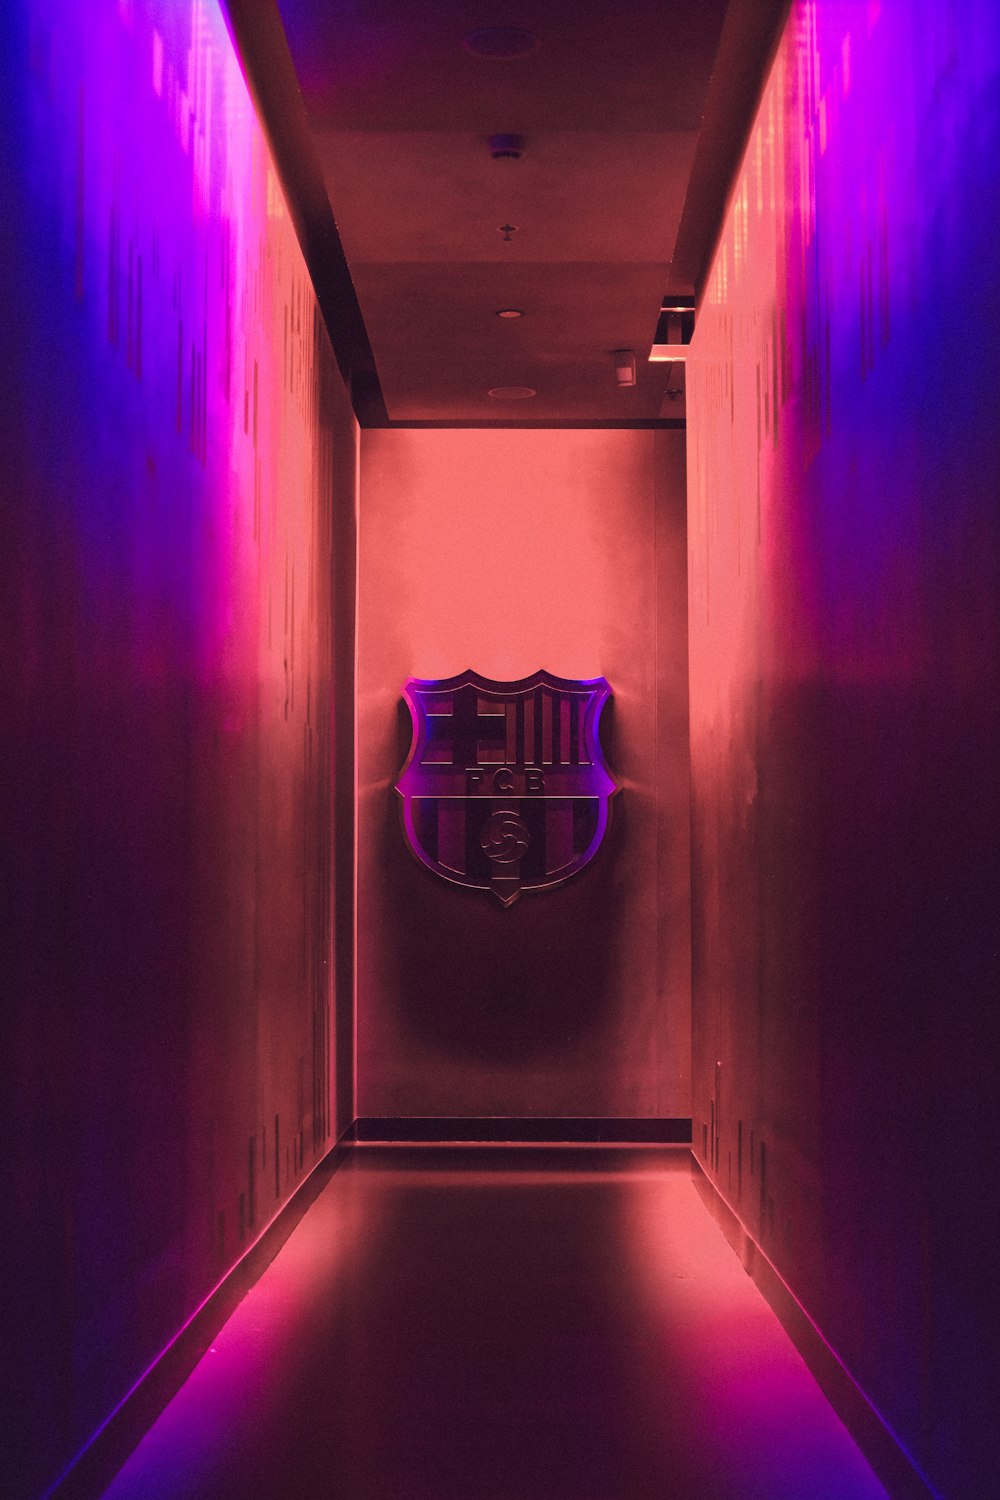 football emblem on wall